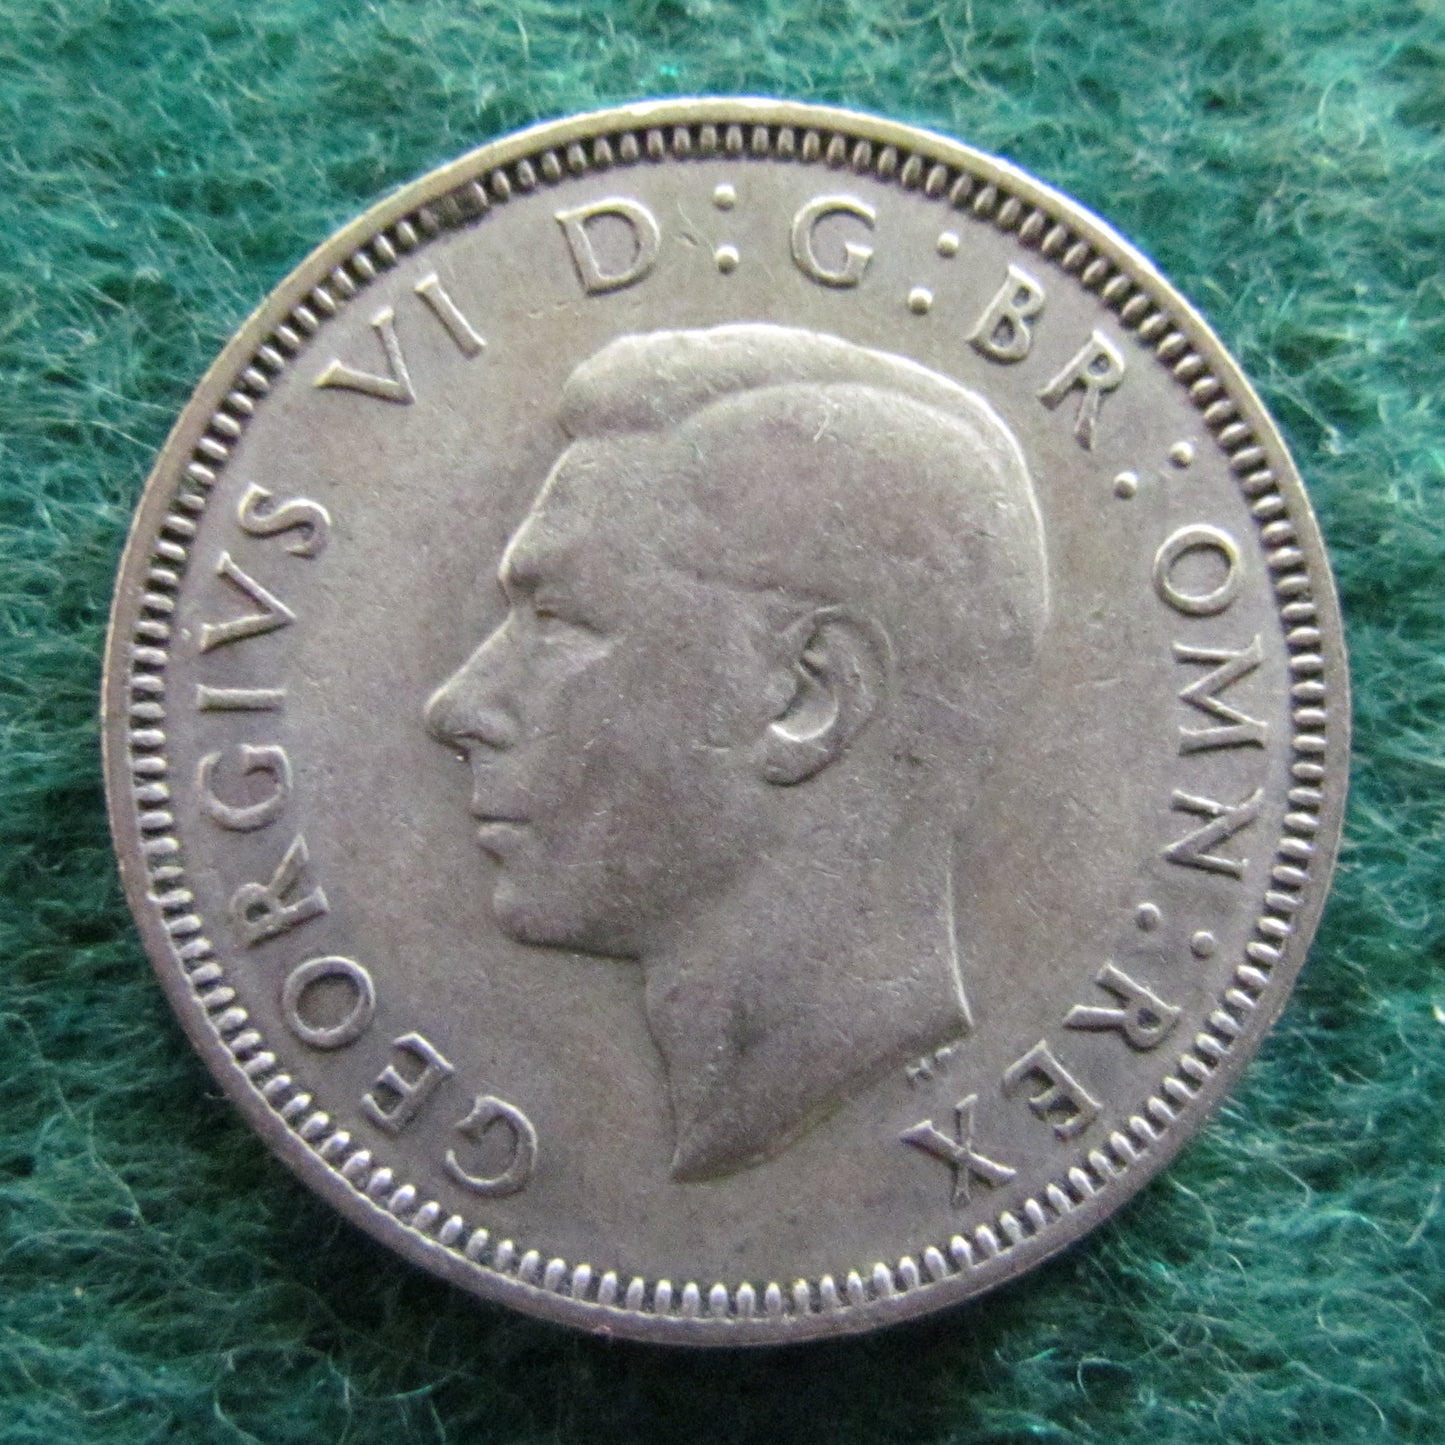 GB British UK Scottish 1940 1 Shilling King George VI Coin